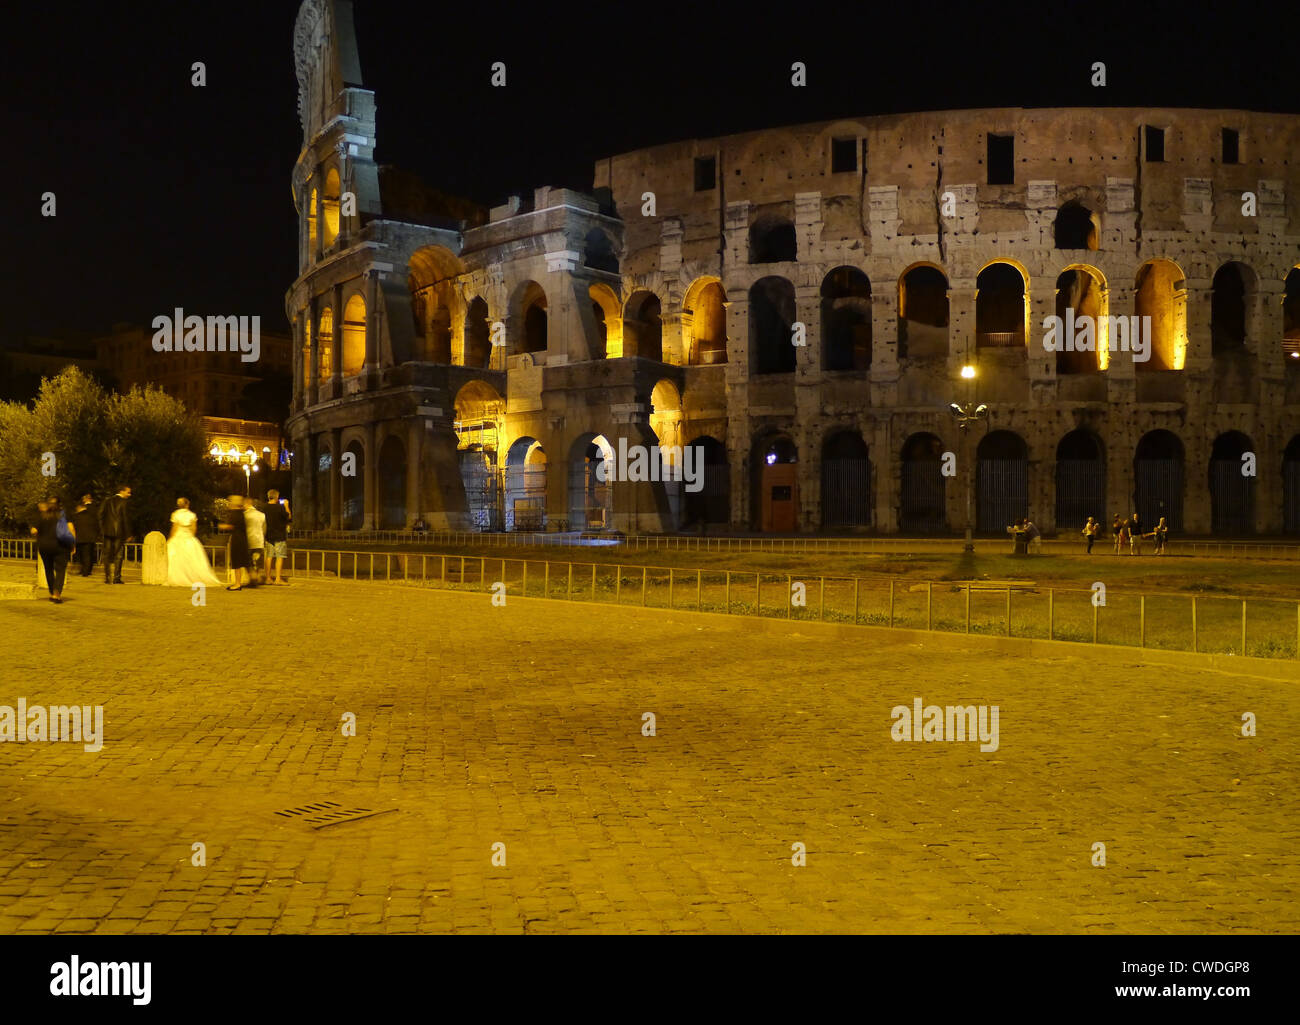 Roman Coliseum illuminated at night Stock Photo